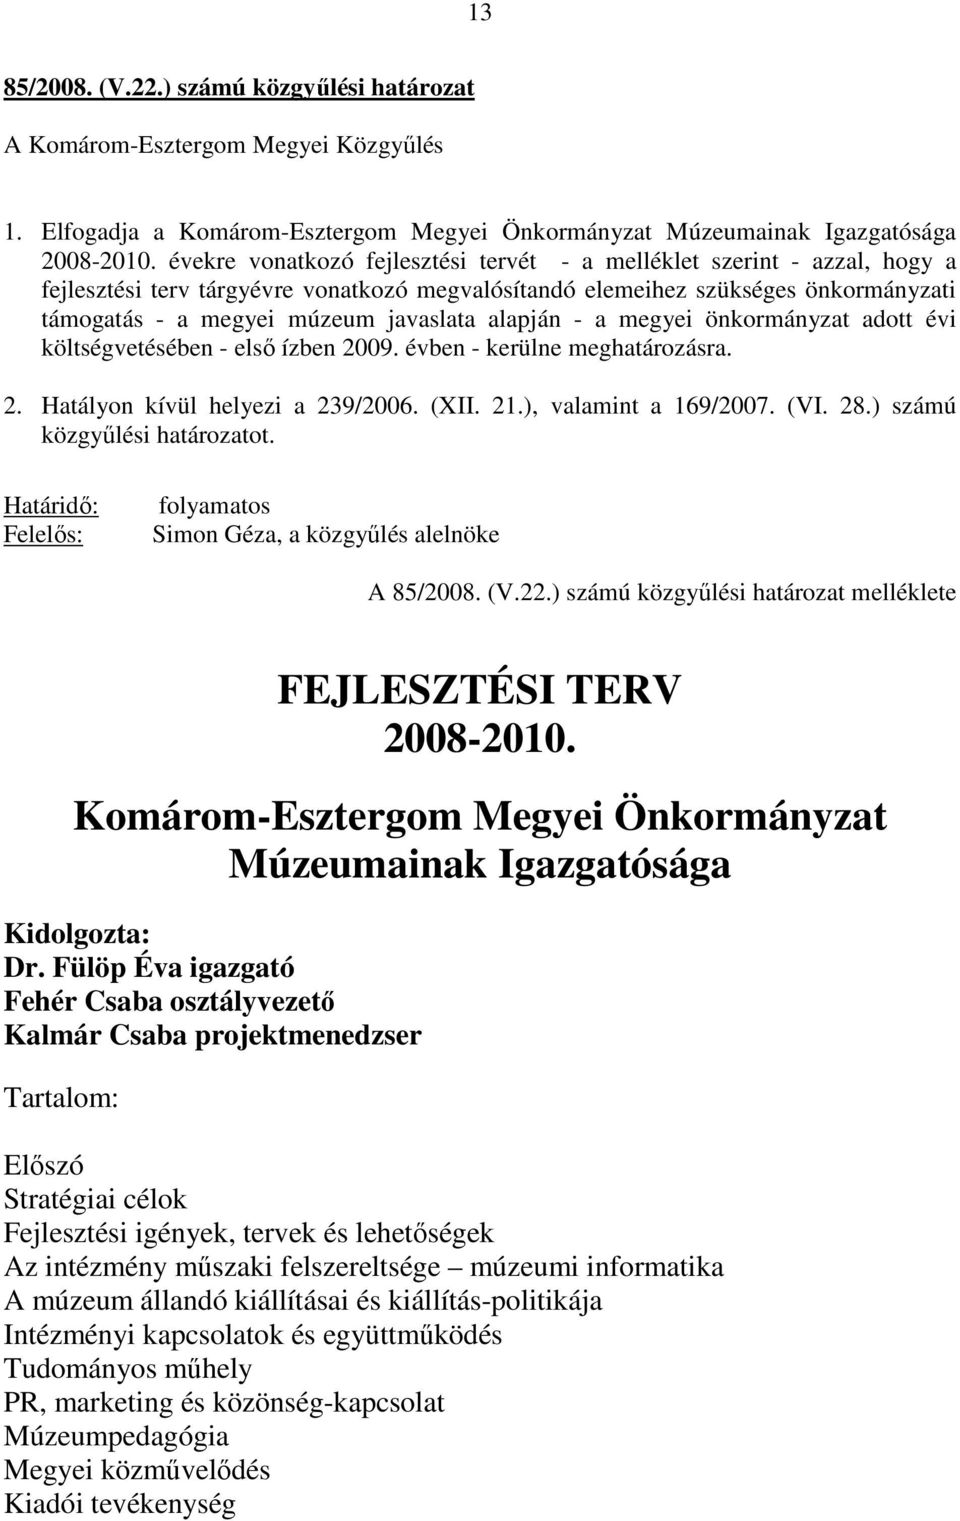 alapján - a megyei önkormányzat adott évi költségvetésében - elsı ízben 2009. évben - kerülne meghatározásra. 2. Hatályon kívül helyezi a 239/2006. (XII. 21.), valamint a 169/2007. (VI. 28.